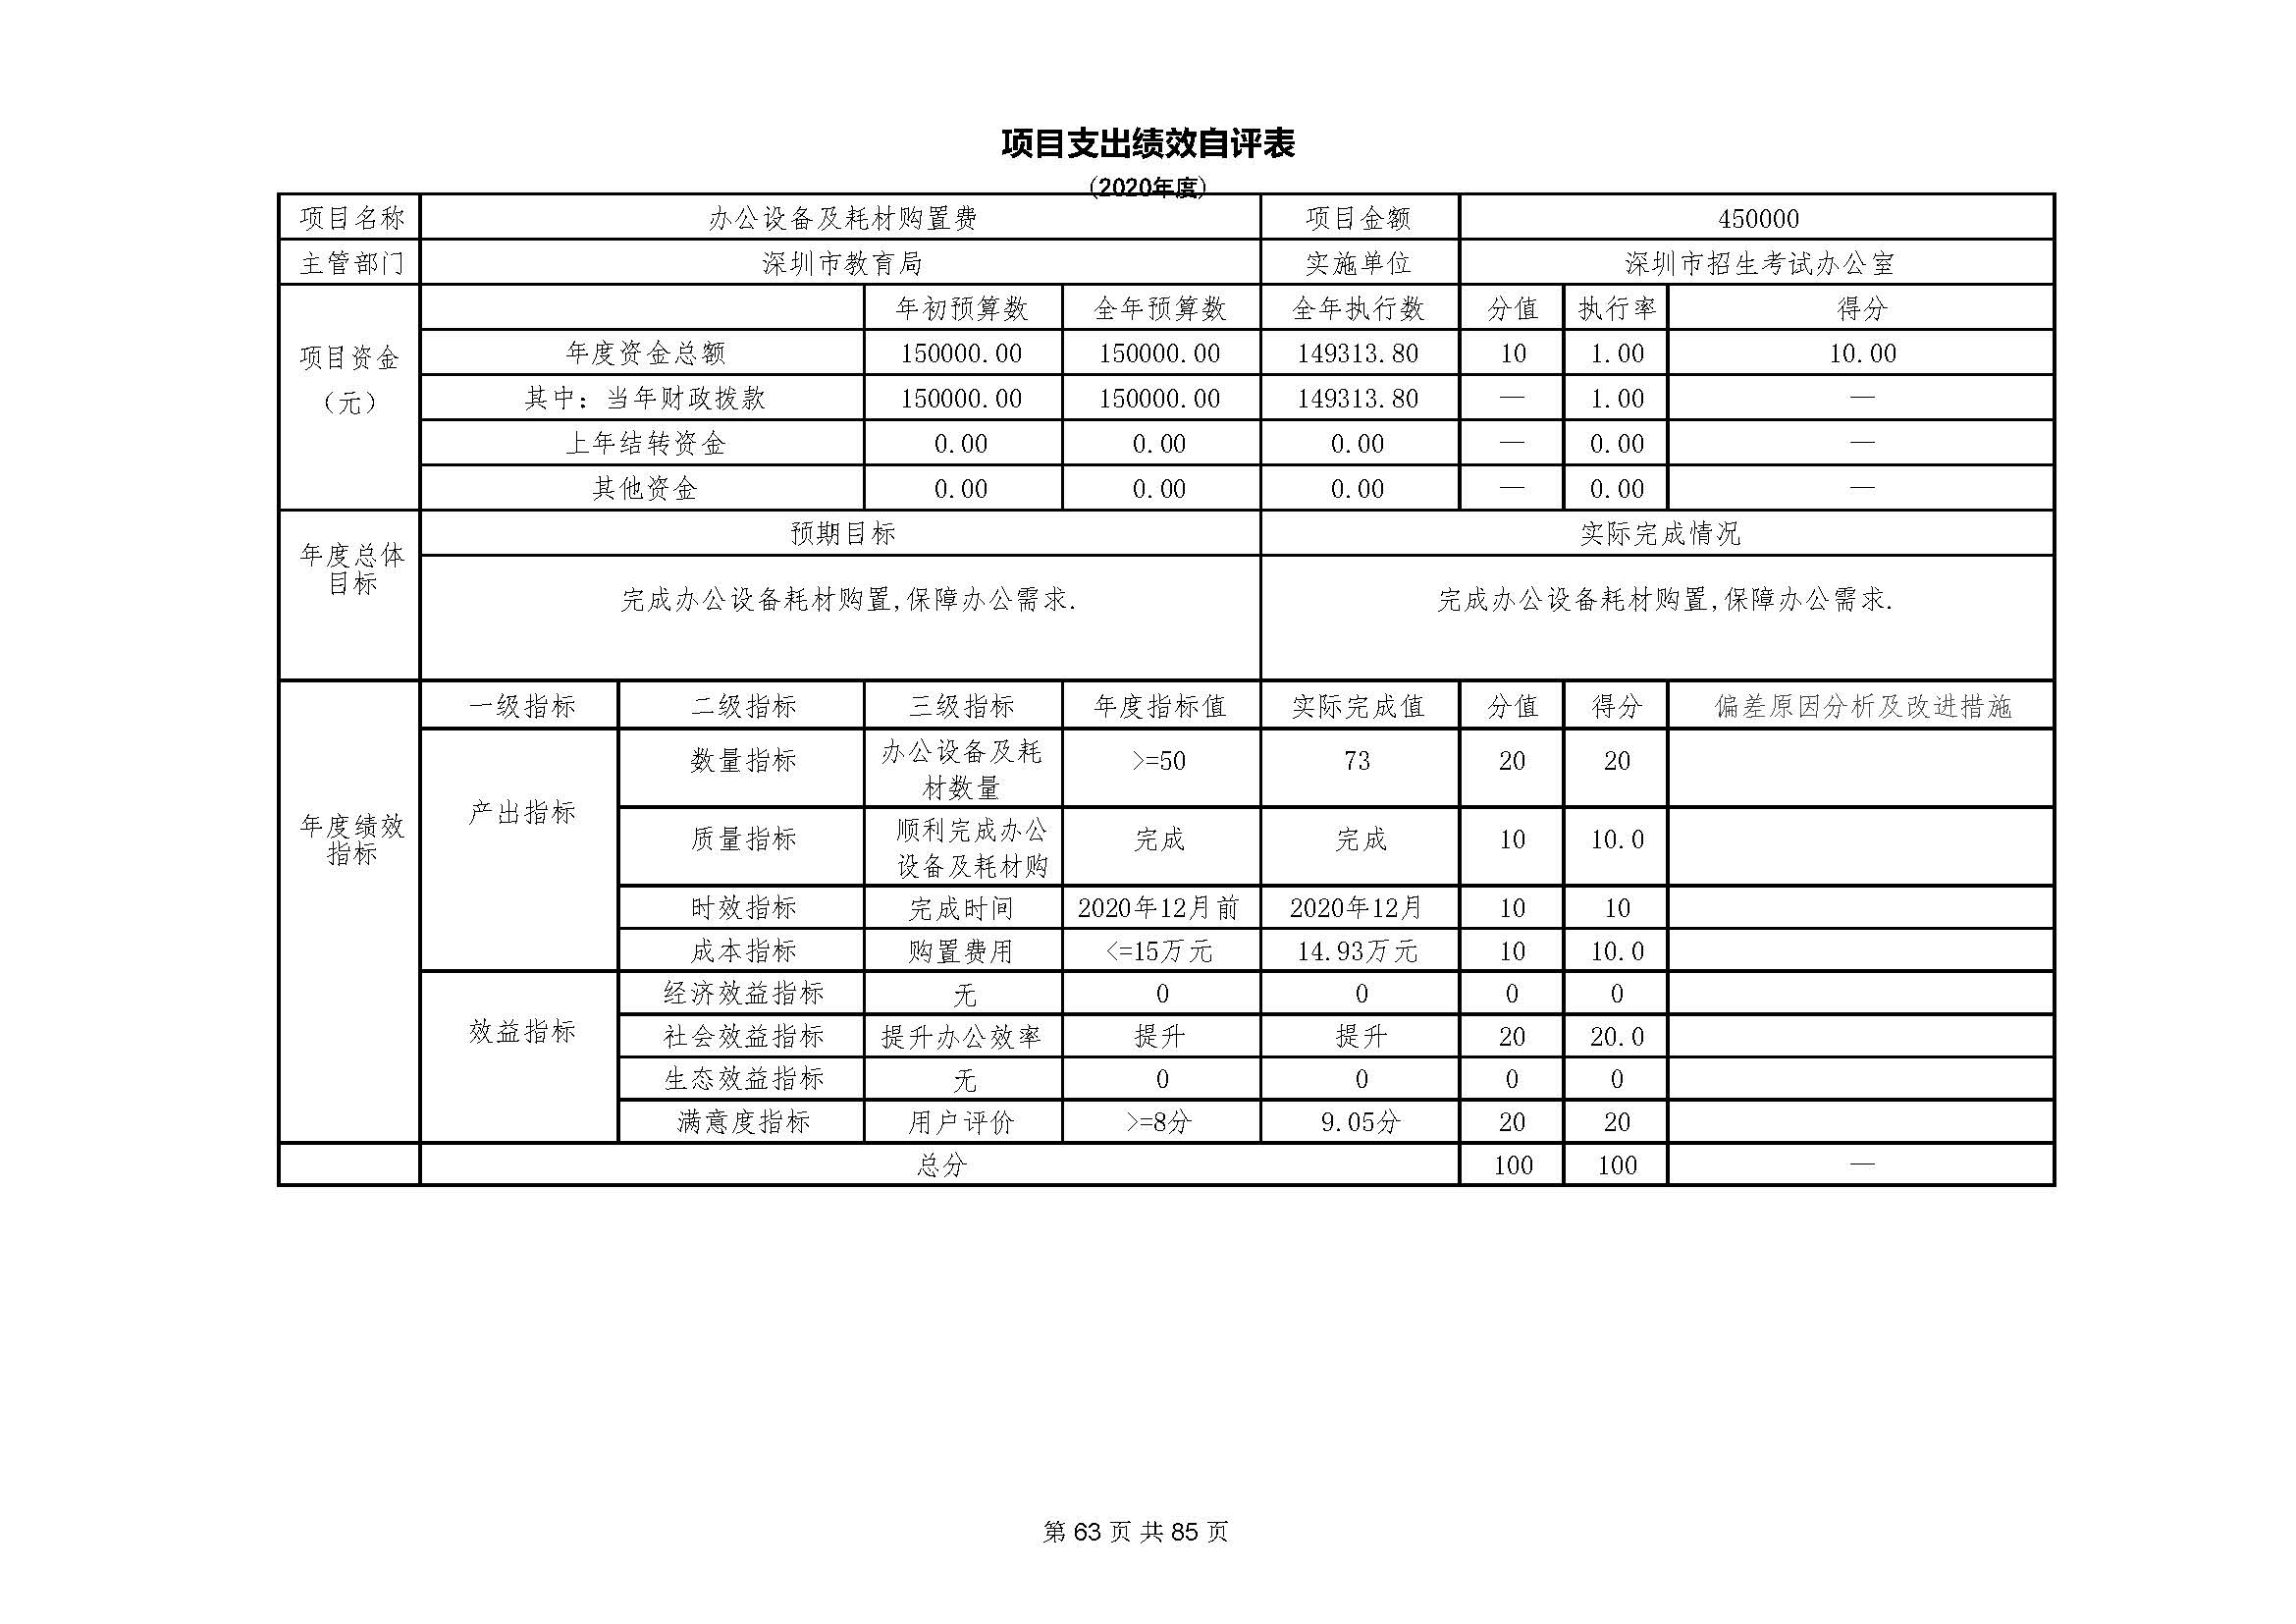 深圳市招生考试办公室2020年度部门决算_页面_64.jpg